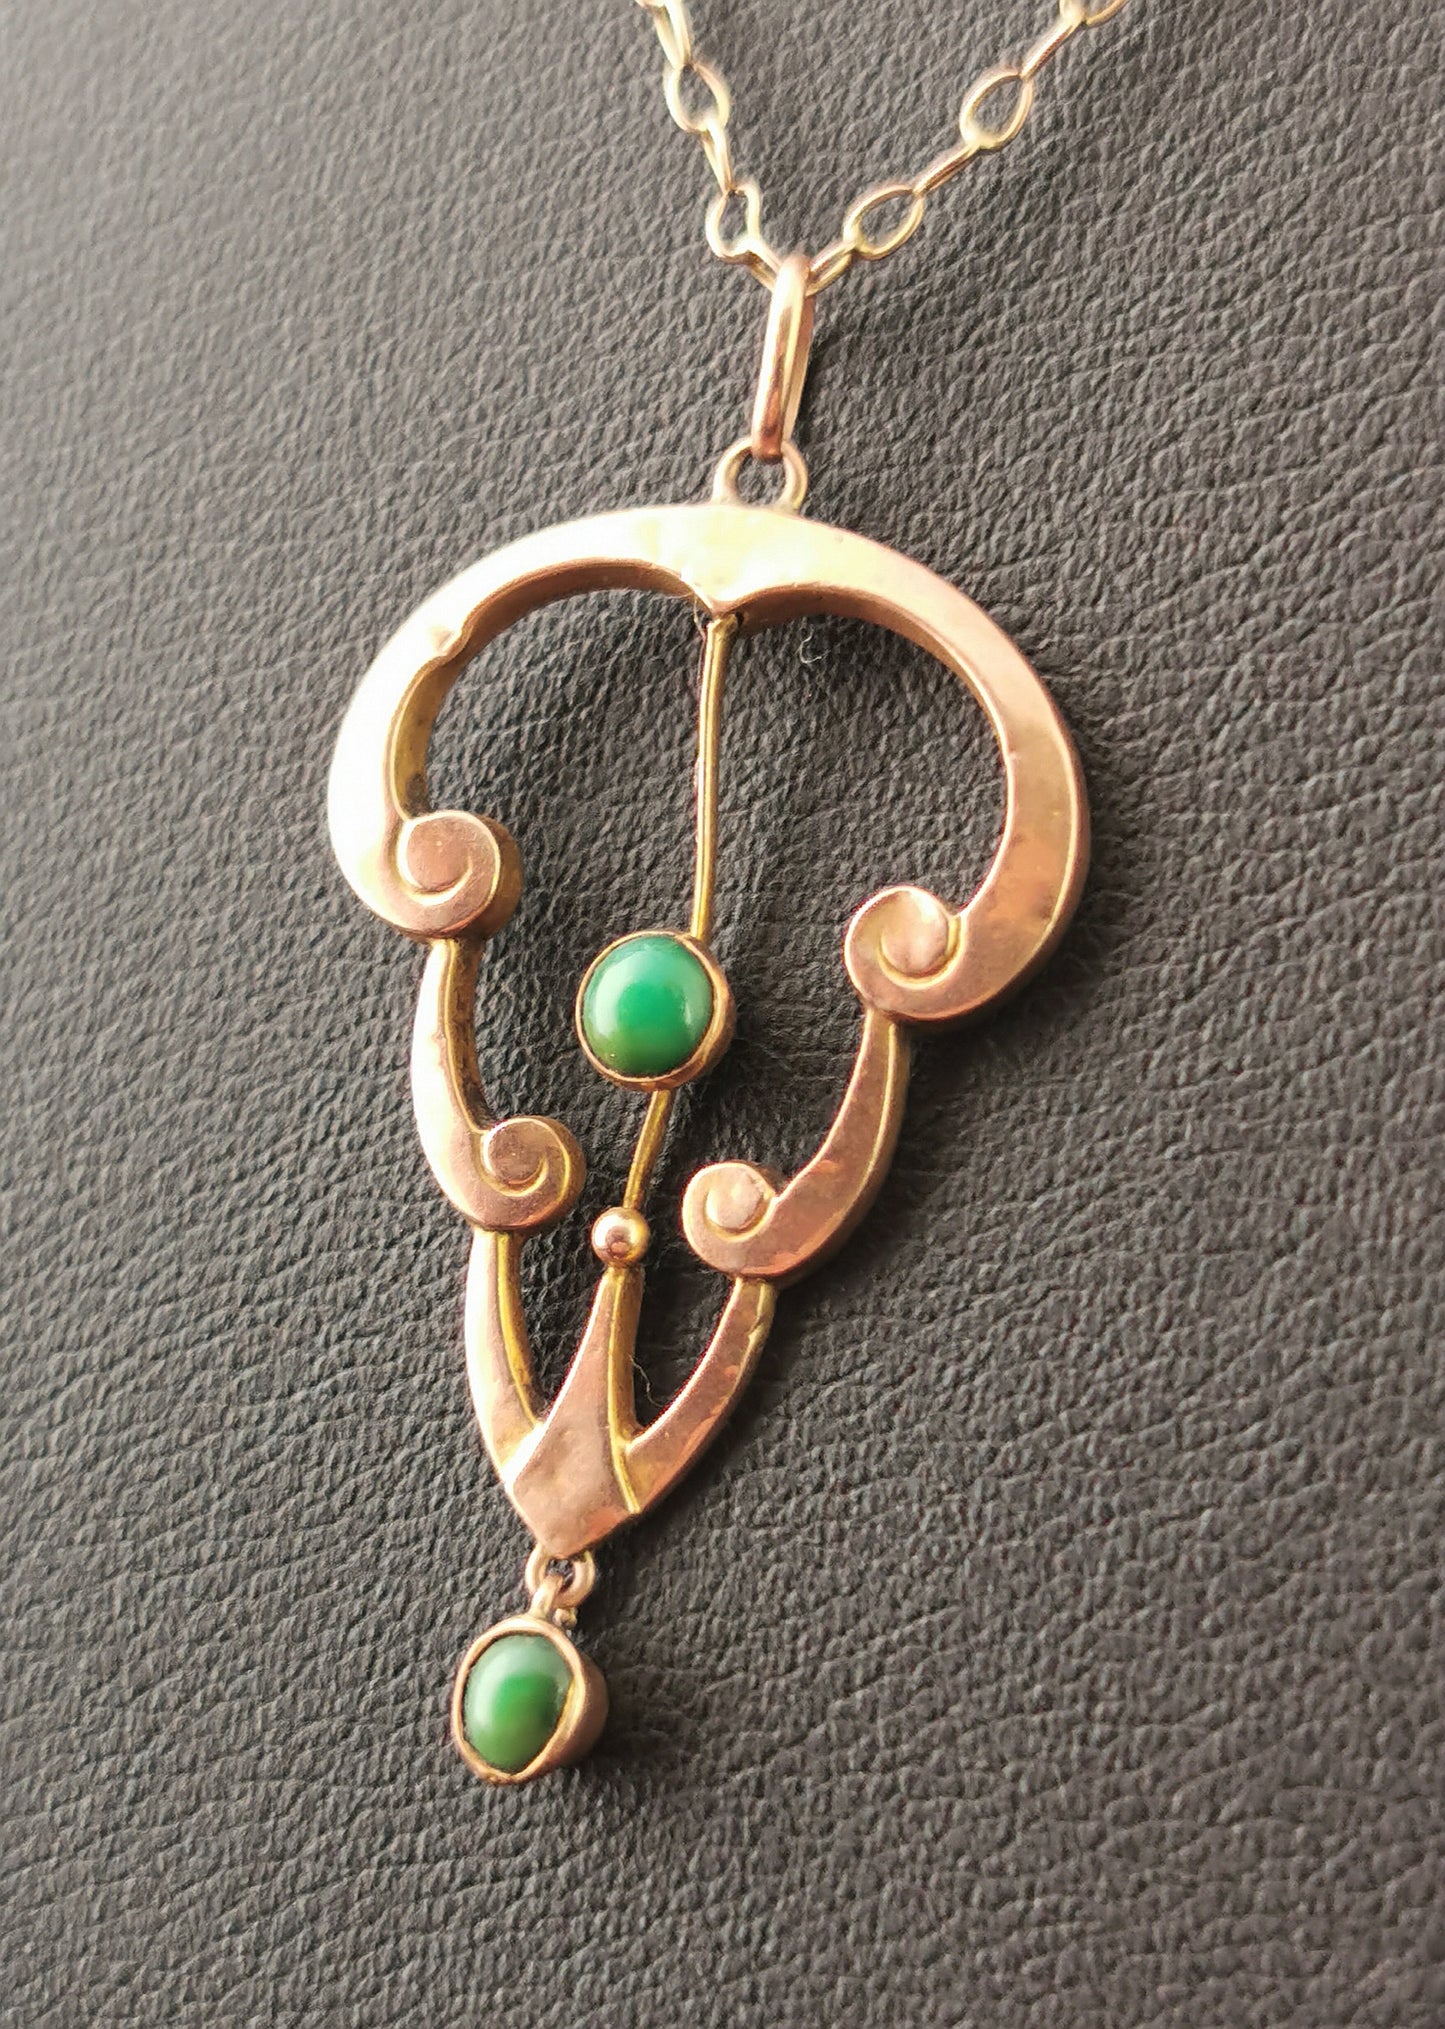 Antique Art Nouveau Turquoise lavalier pendant, 9ct Rose gold necklace